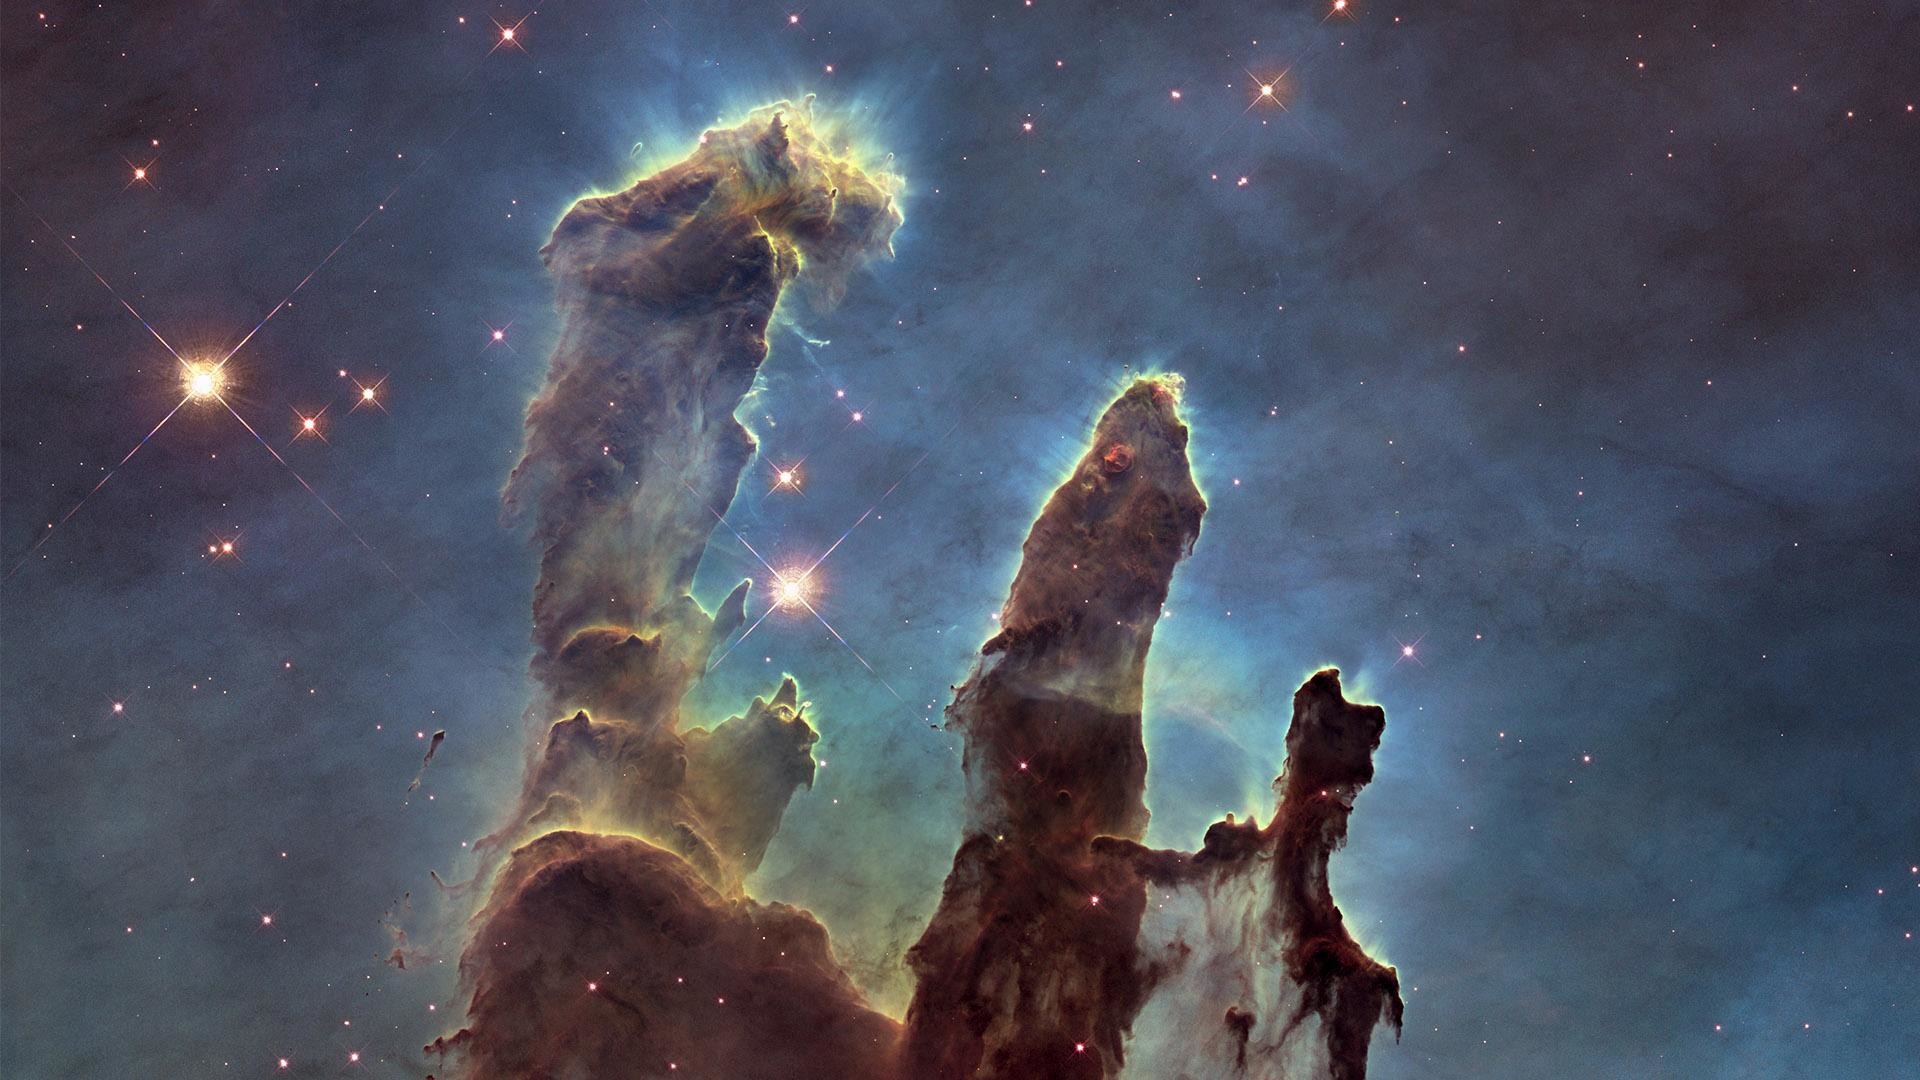 wallpaper.wiki-Hubble-Image-HD-1920×1080-PIC-WPD002266